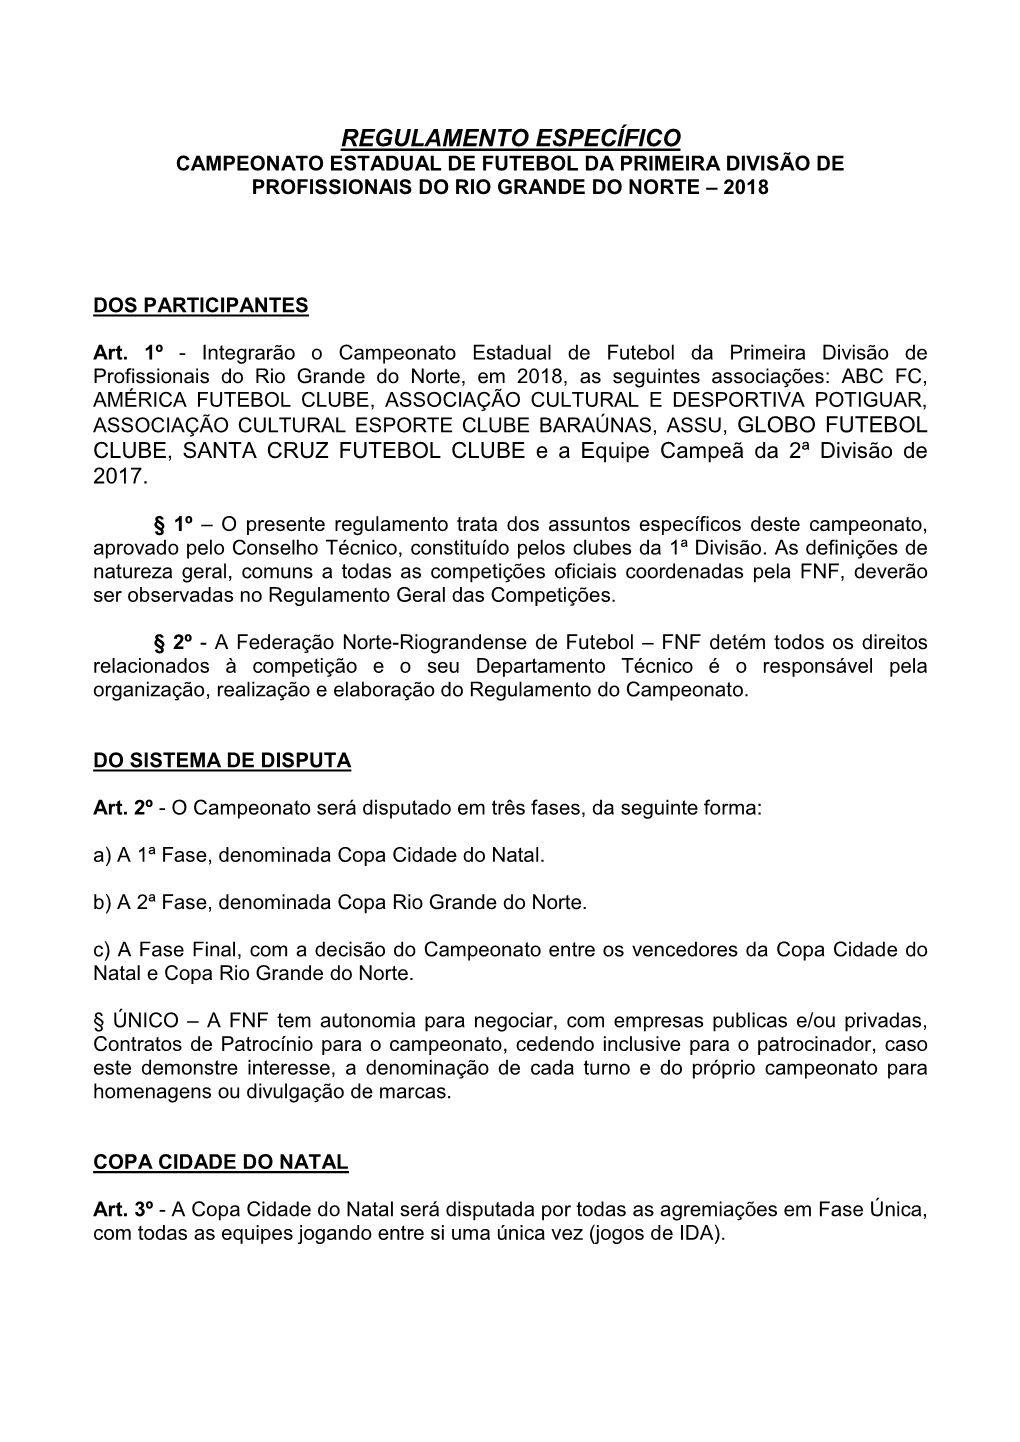 Regulamento Específico Campeonato Estadual De Futebol Da Primeira Divisão De Profissionais Do Rio Grande Do Norte – 2018